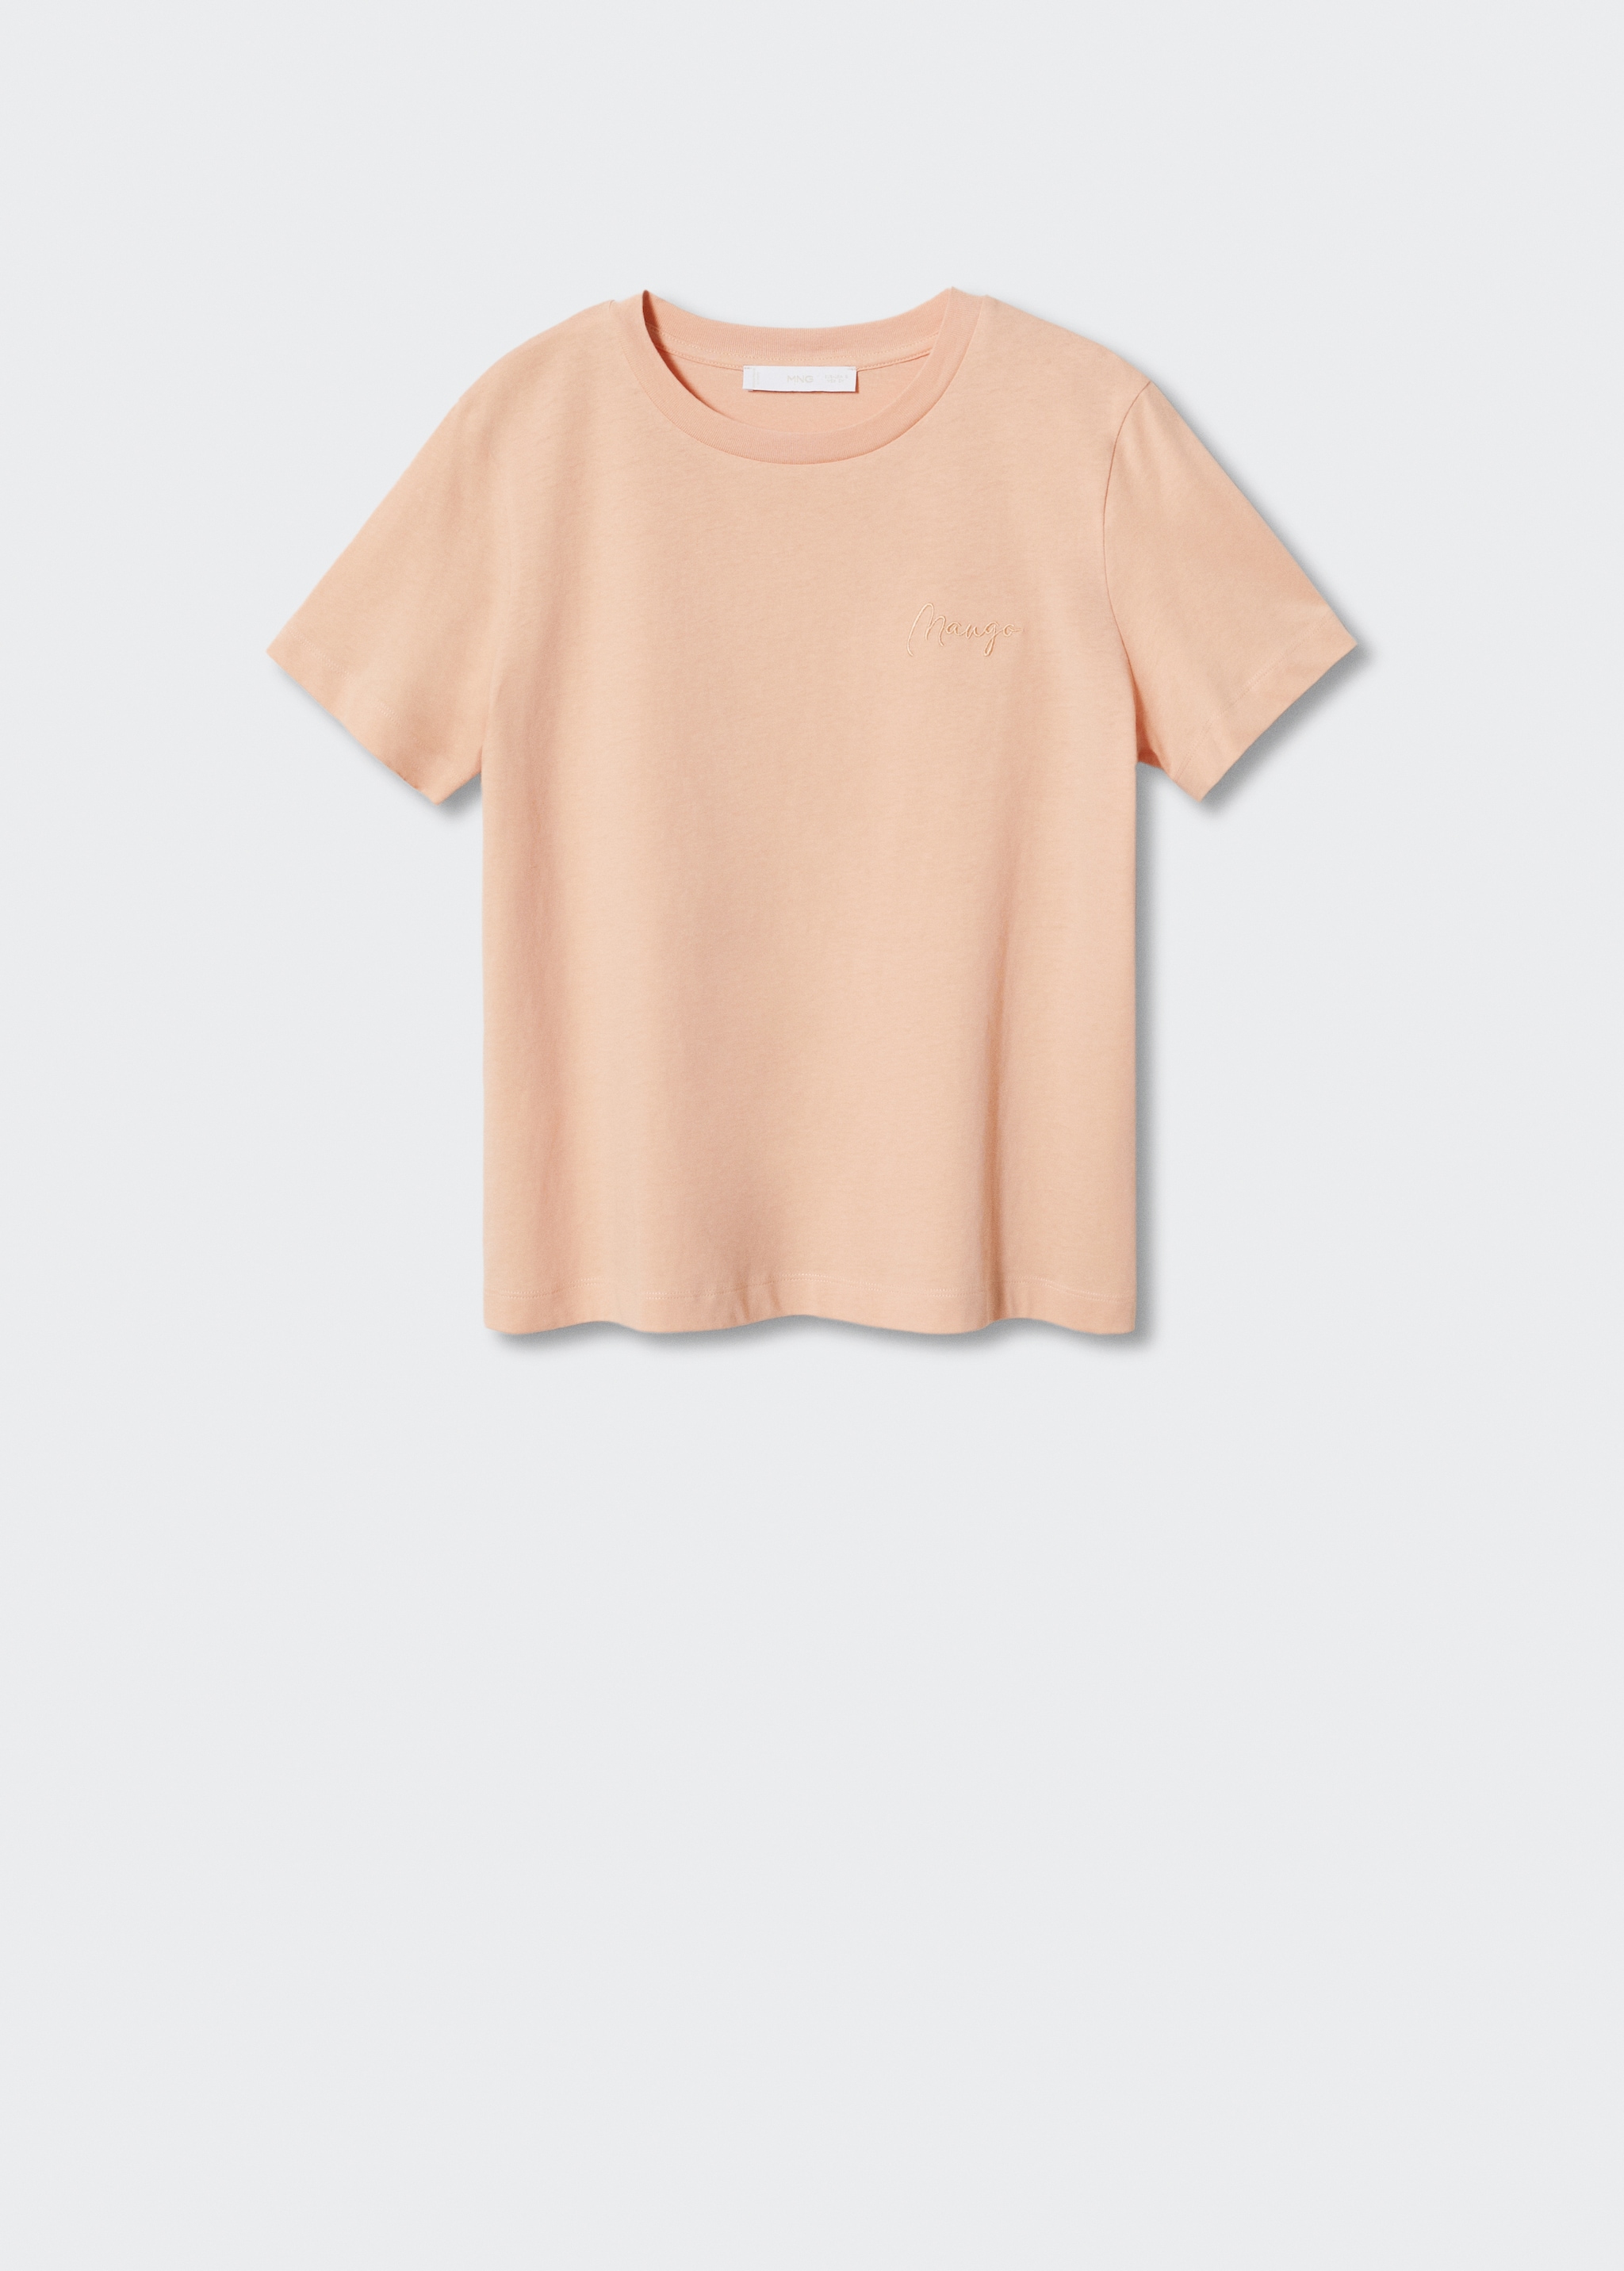 Camiseta algodón cuello redondo - Artículo sin modelo